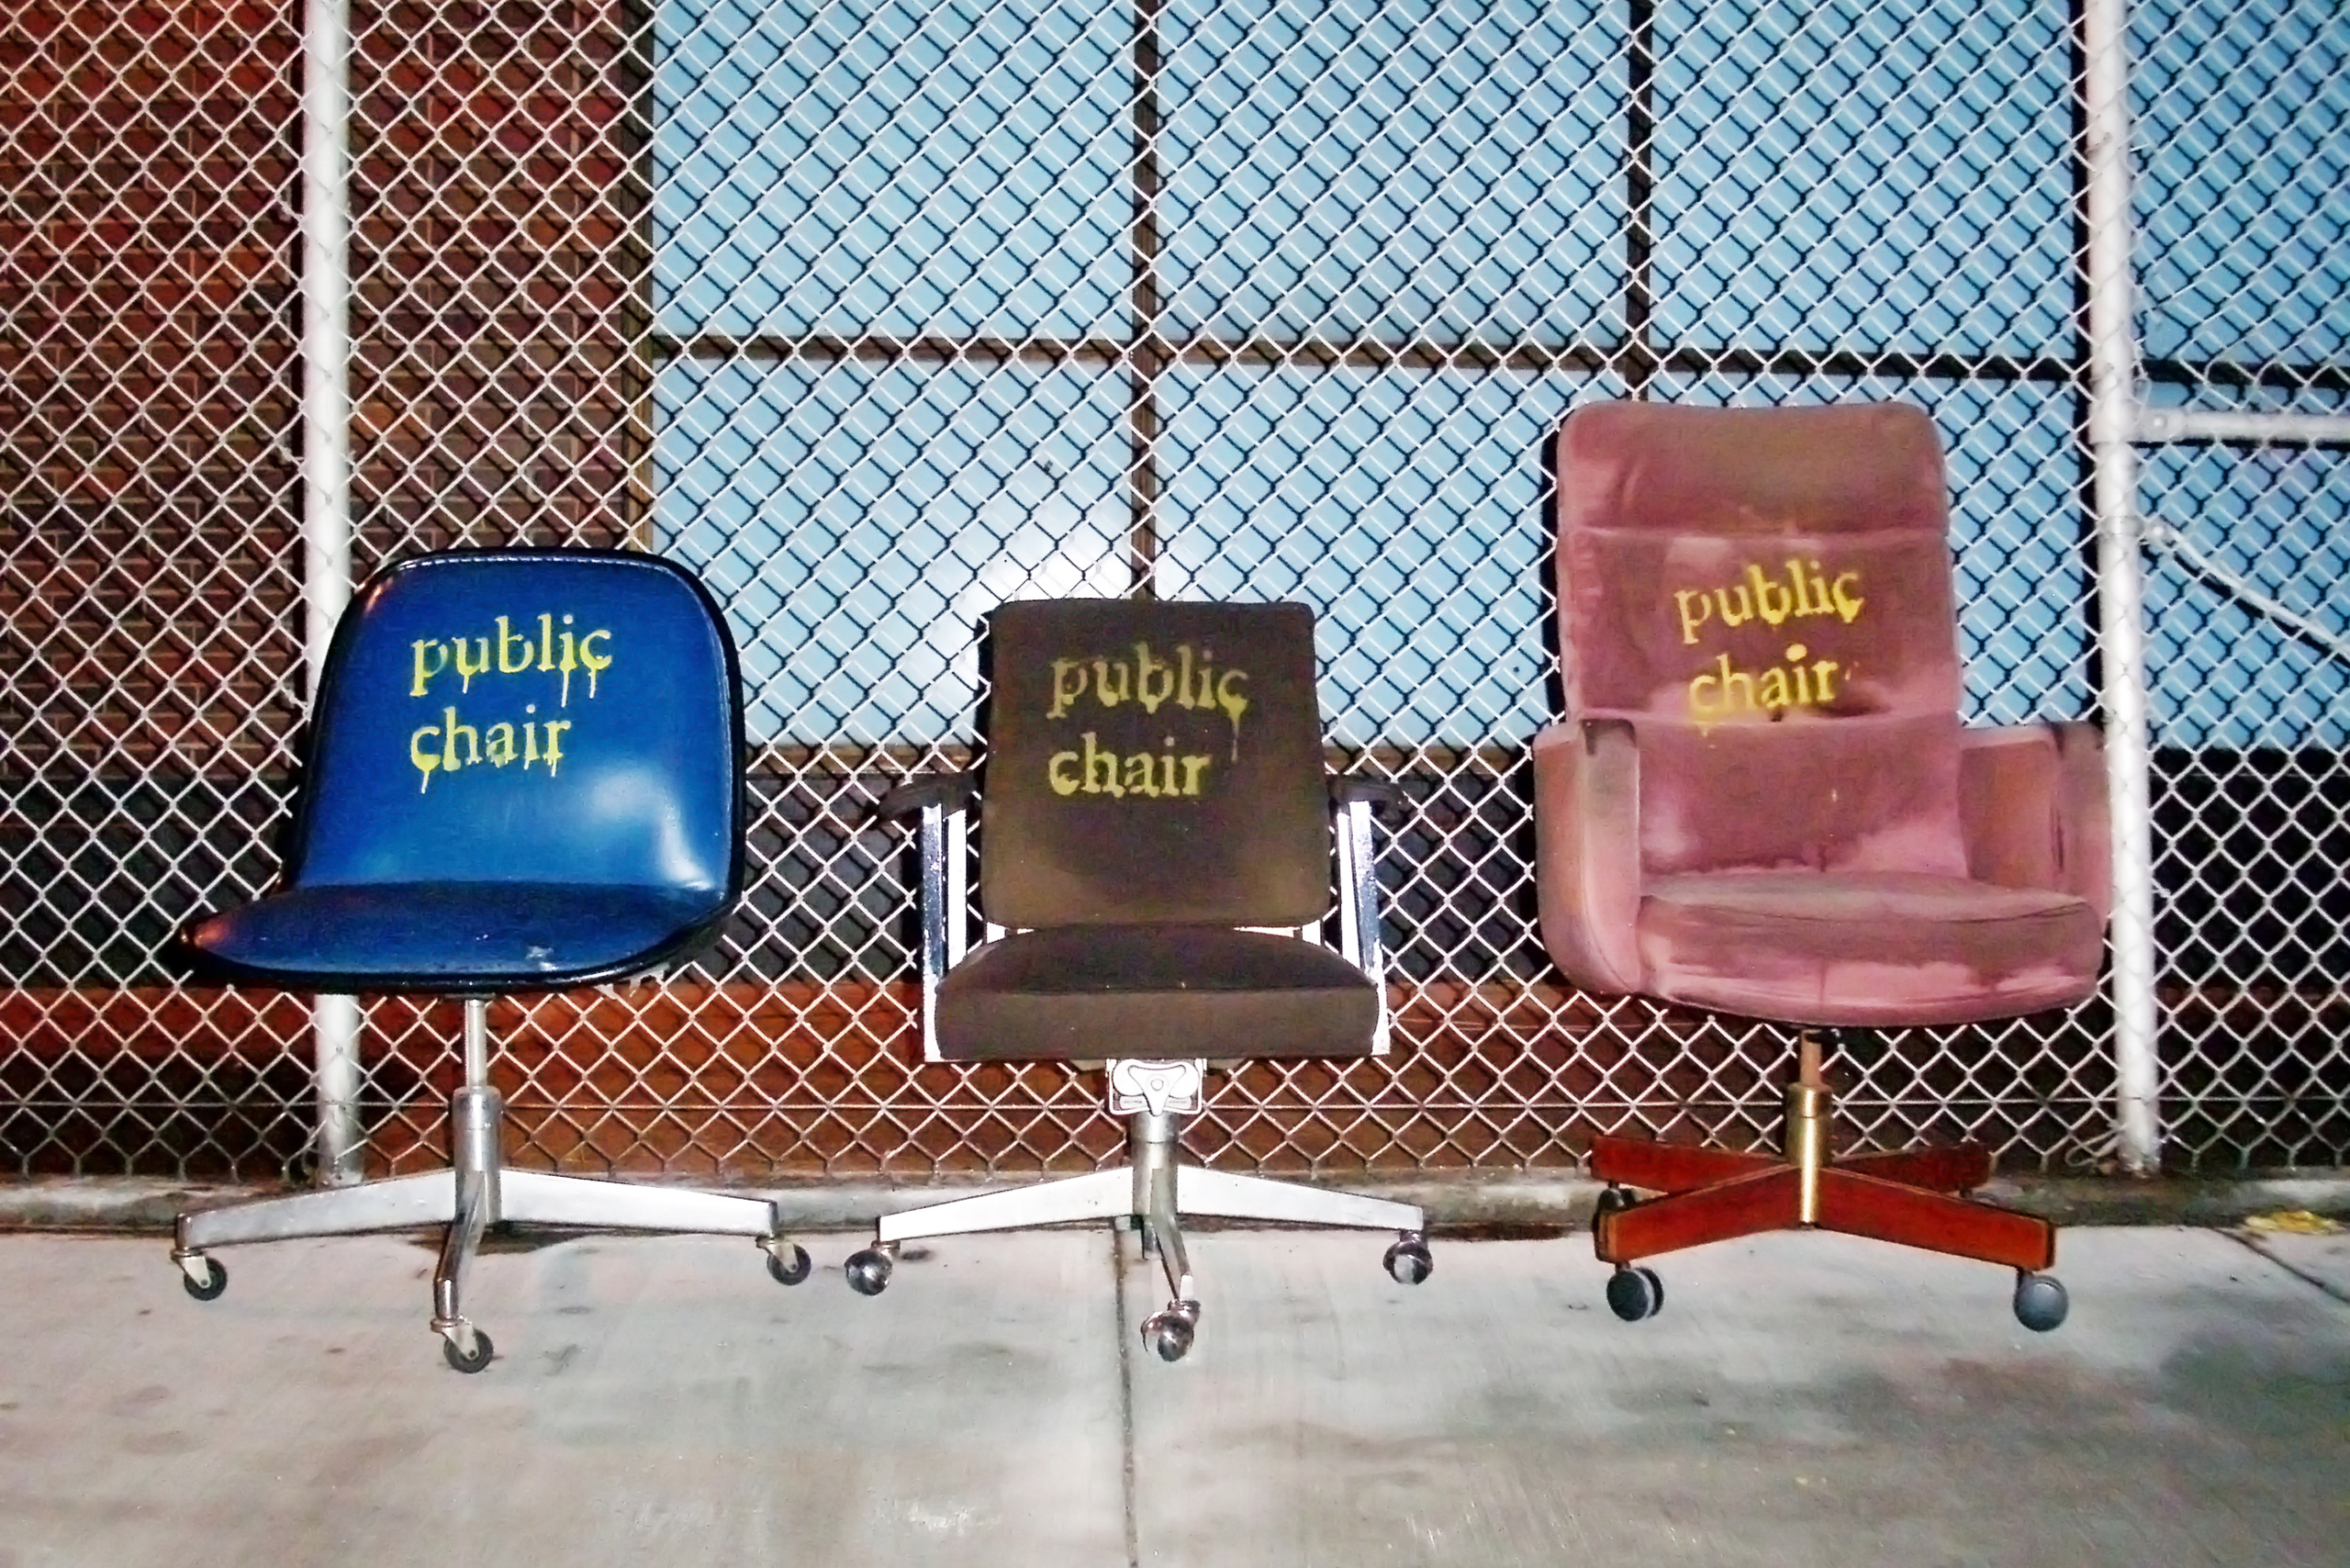 Public Chair